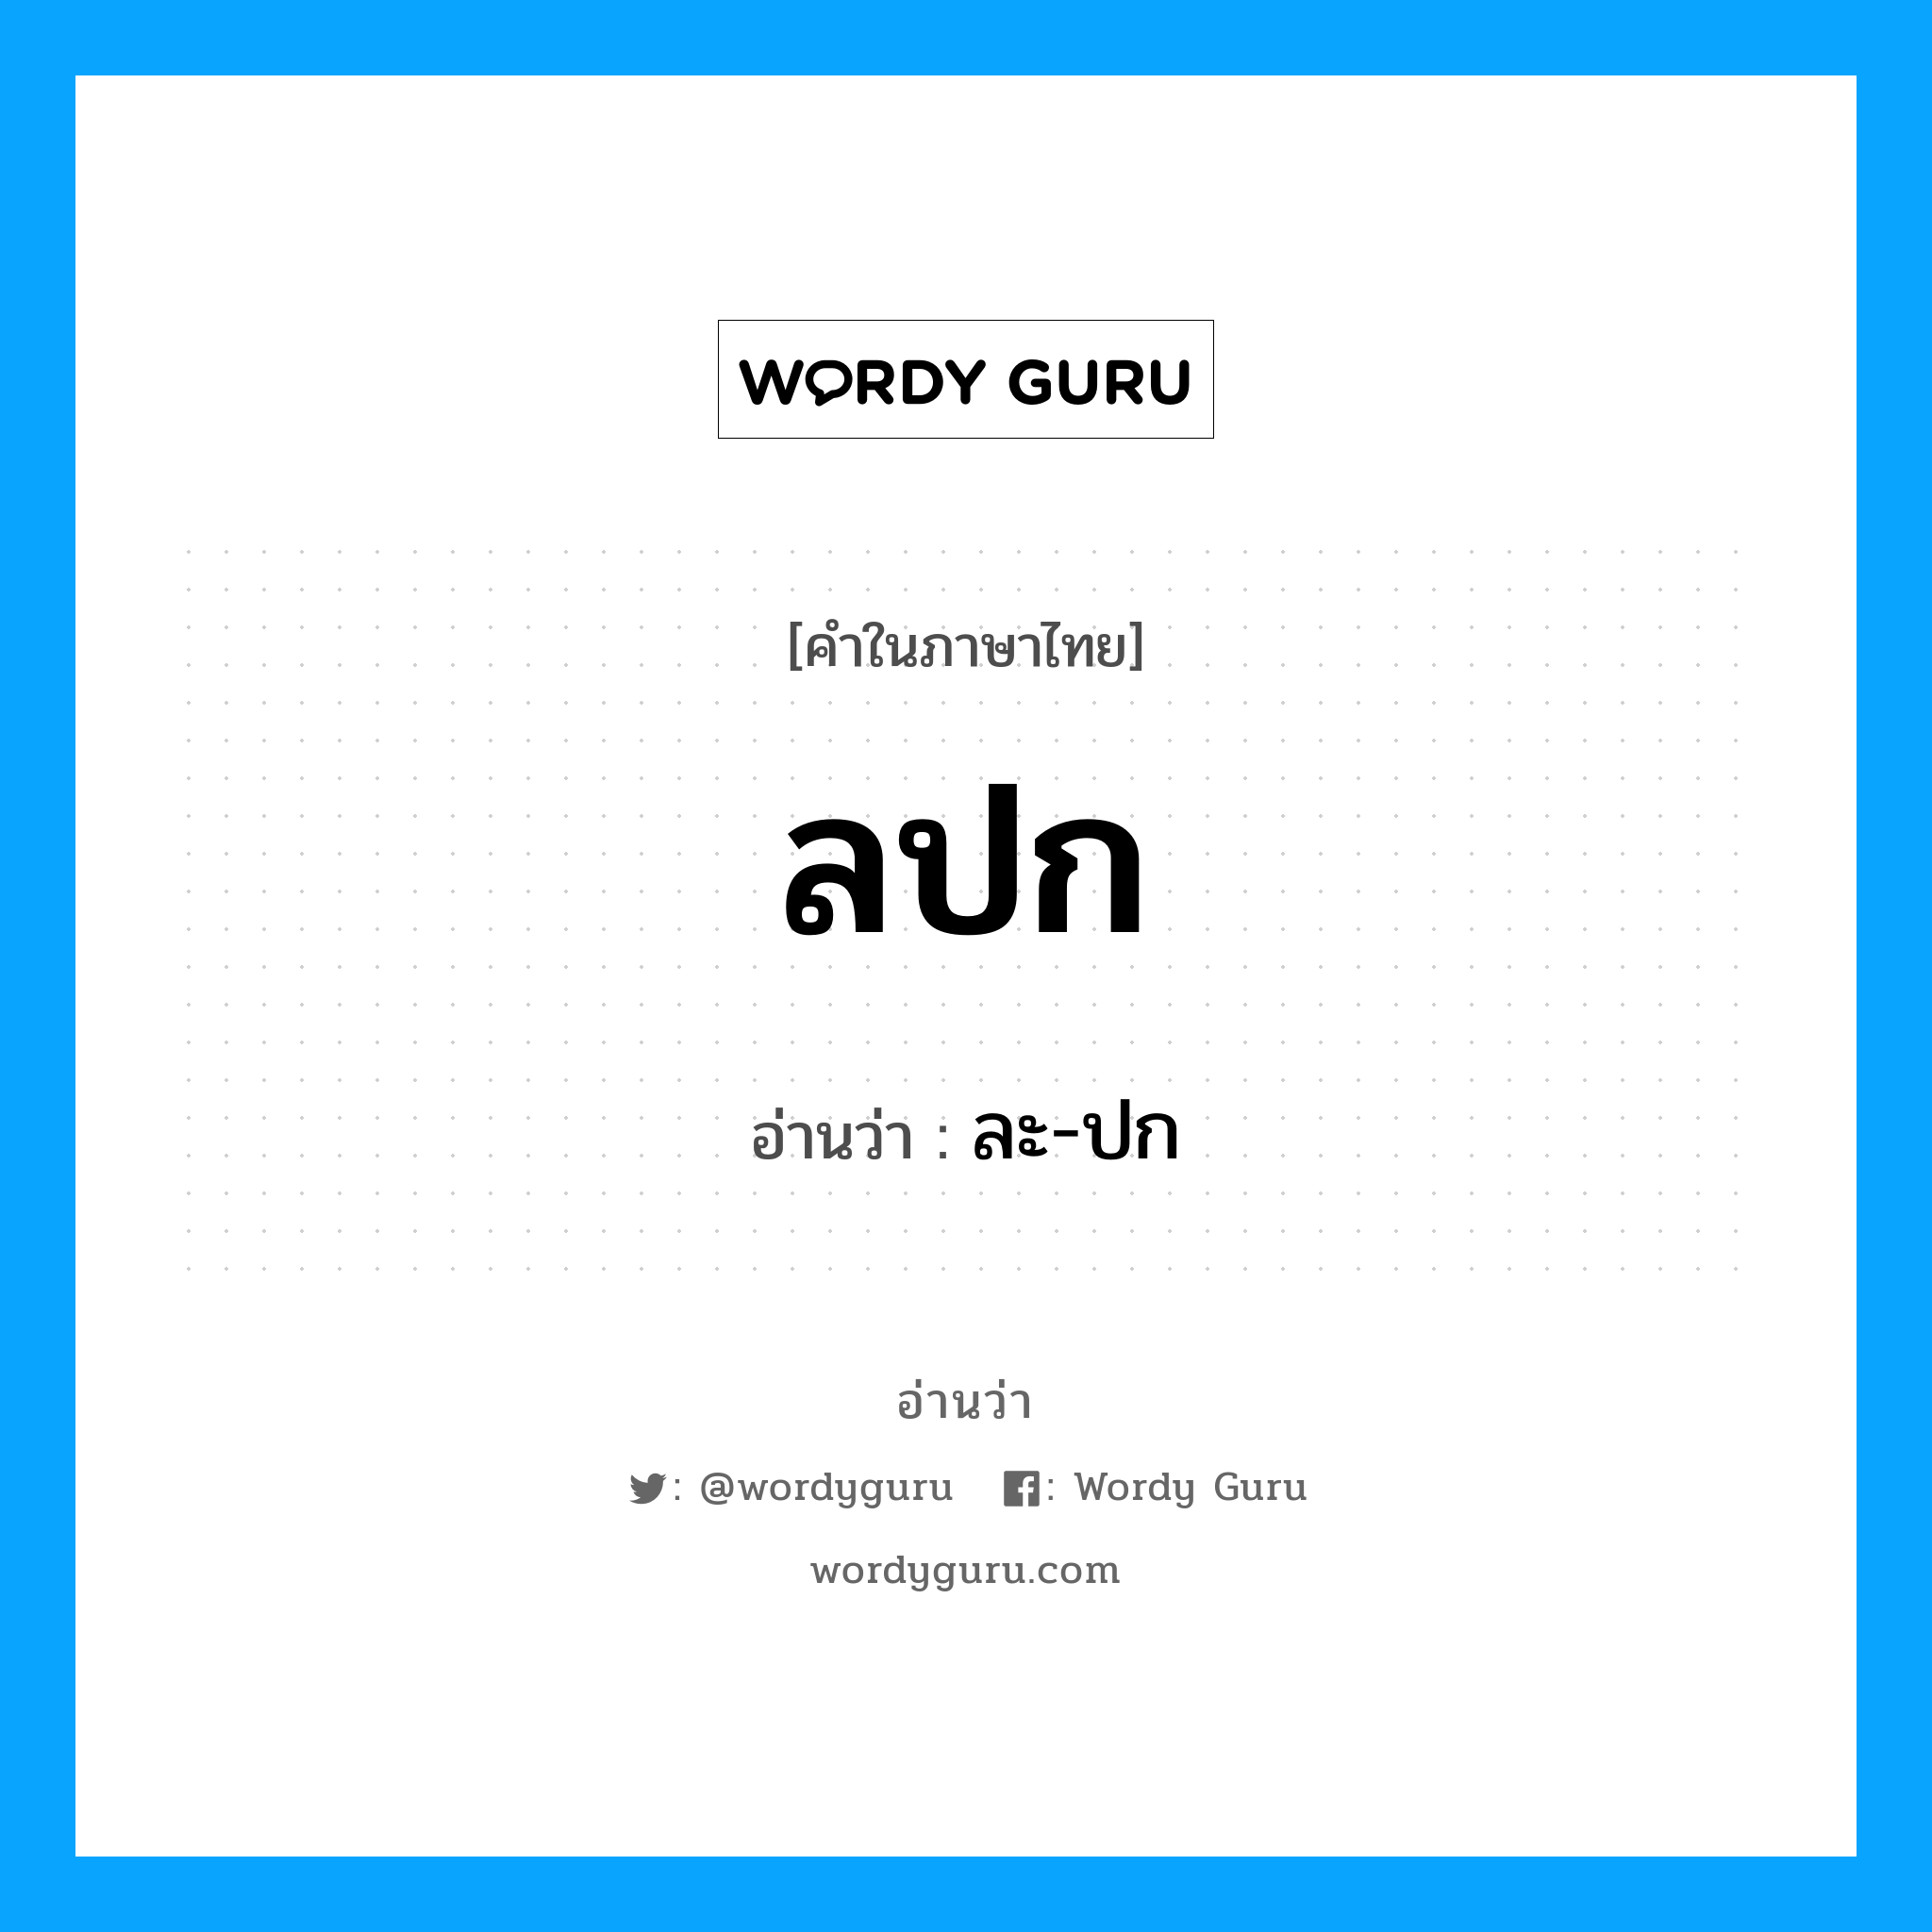 ละ-ปก เป็นคำอ่านของคำไหน?, คำในภาษาไทย ละ-ปก อ่านว่า ลปก